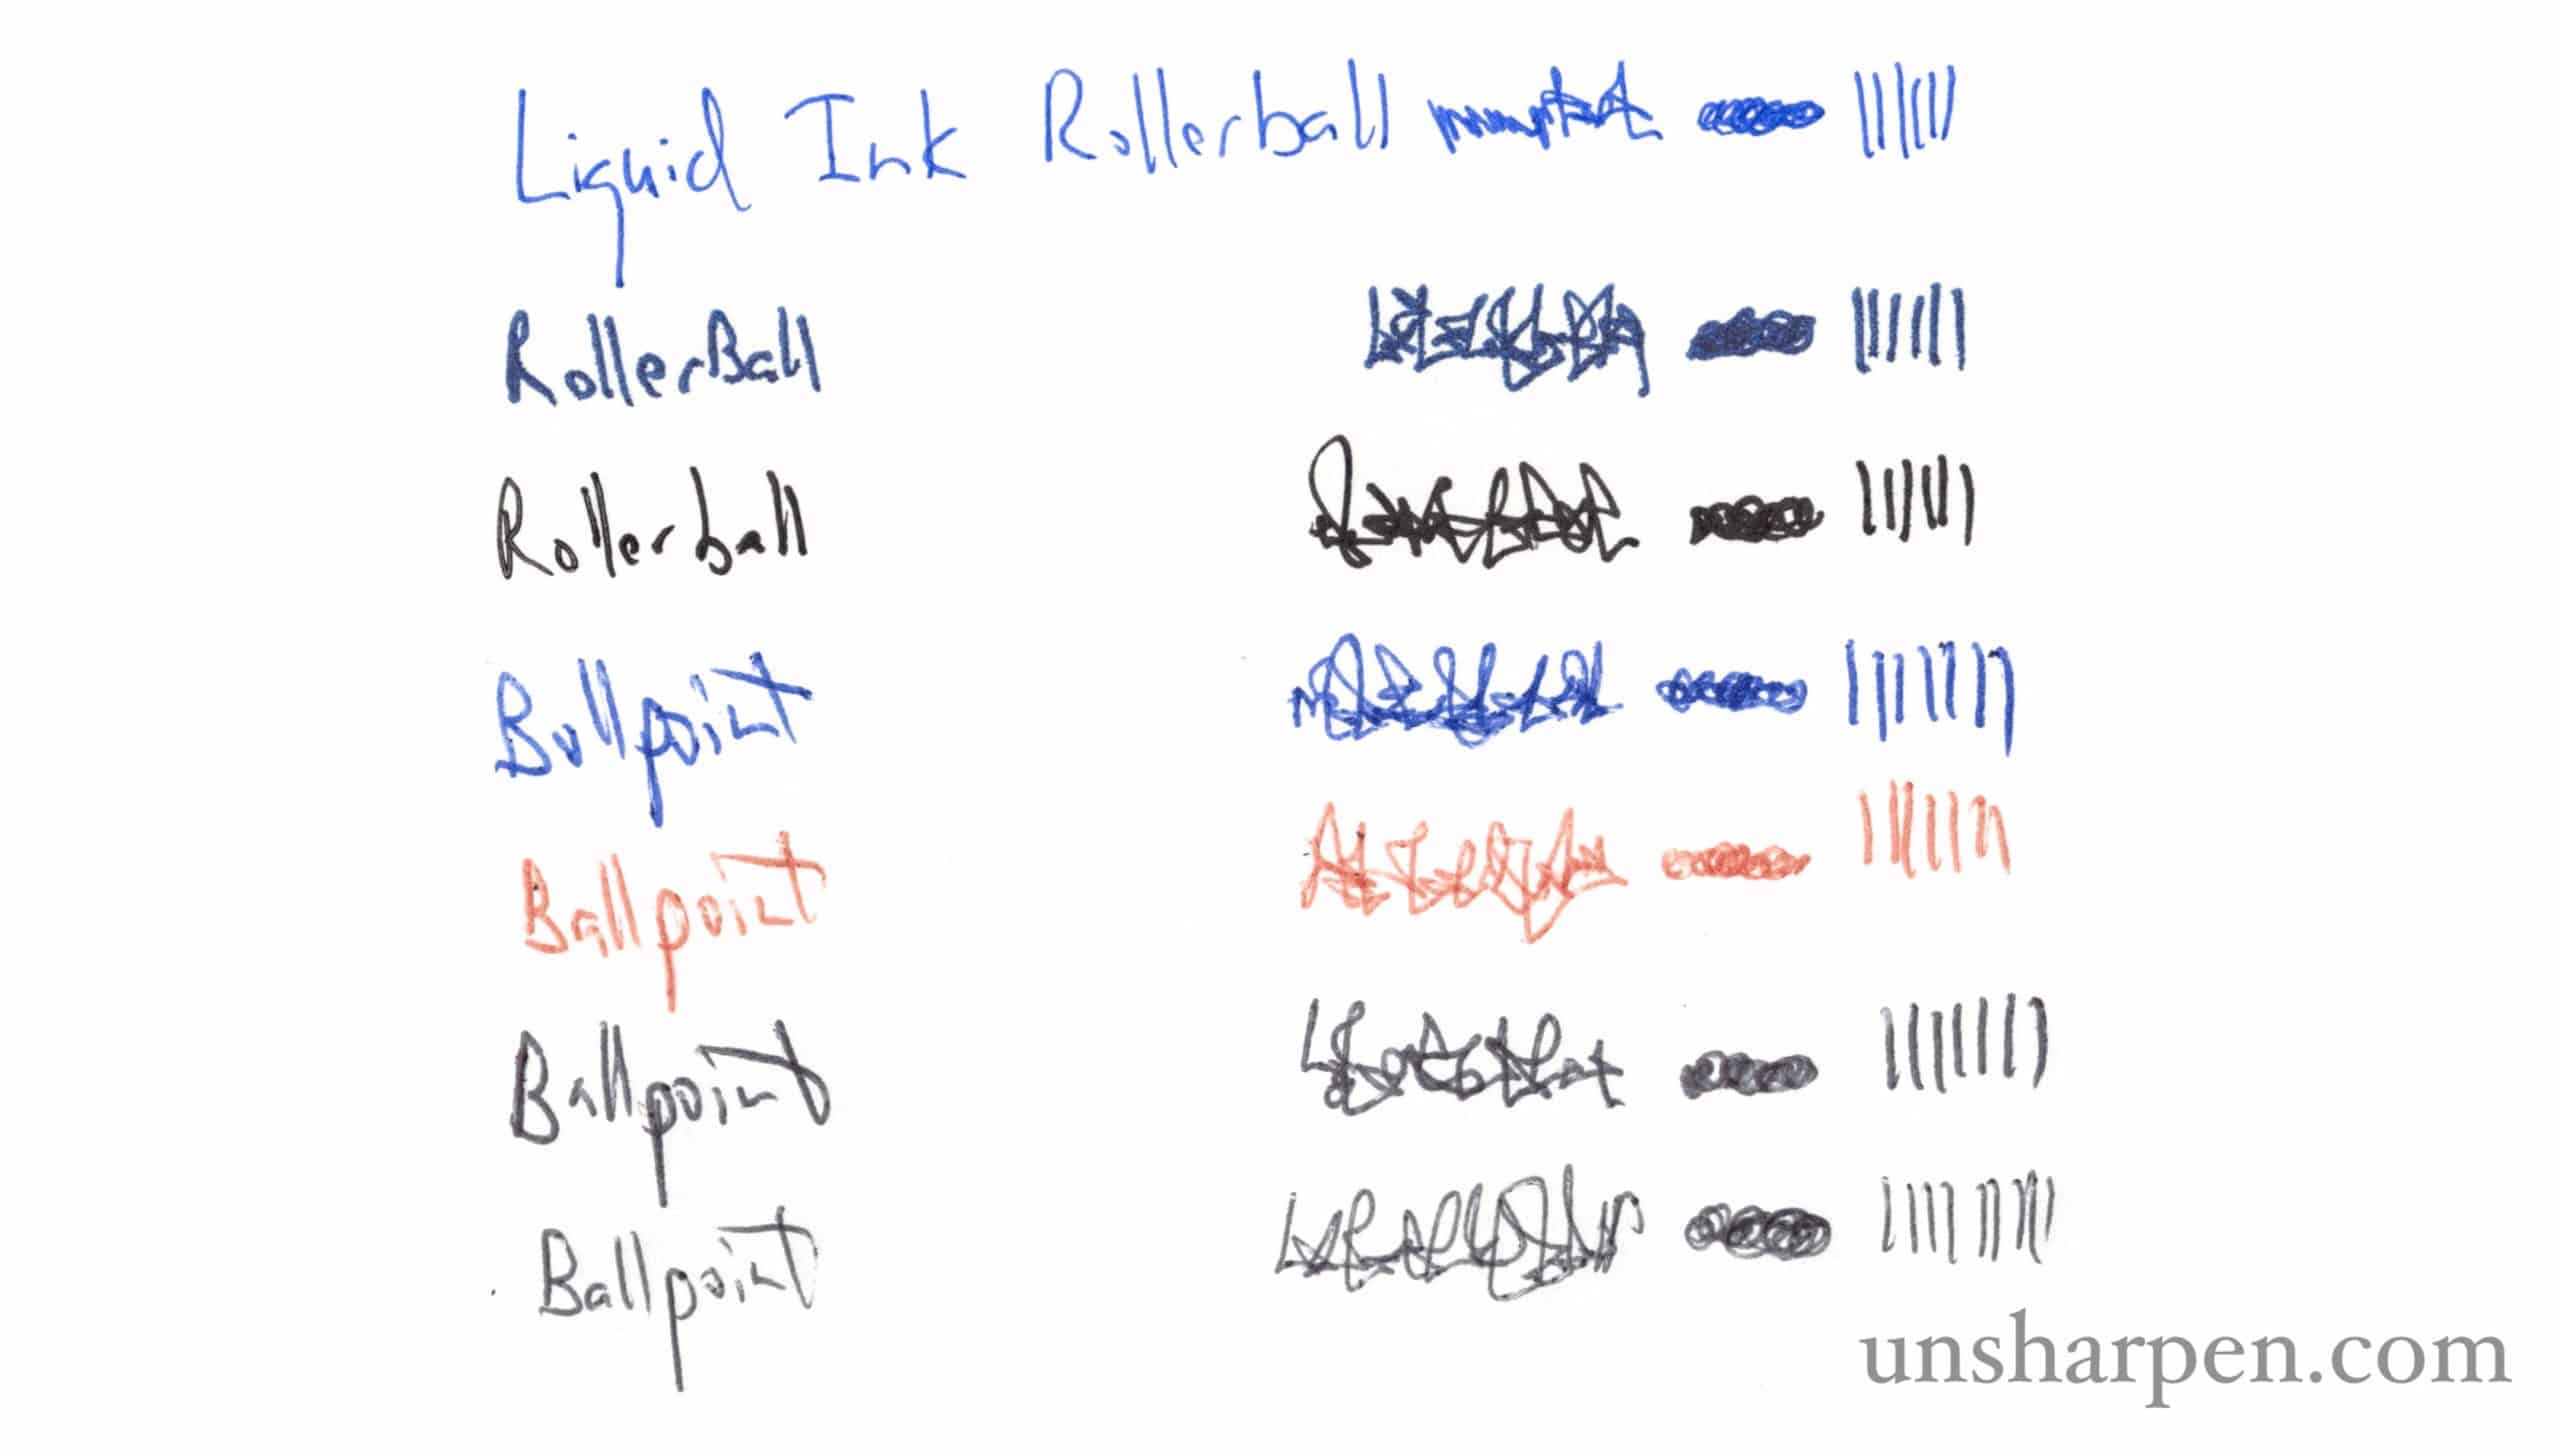 Rollerball vs Ballpoint Pens Explained [Plus Video]